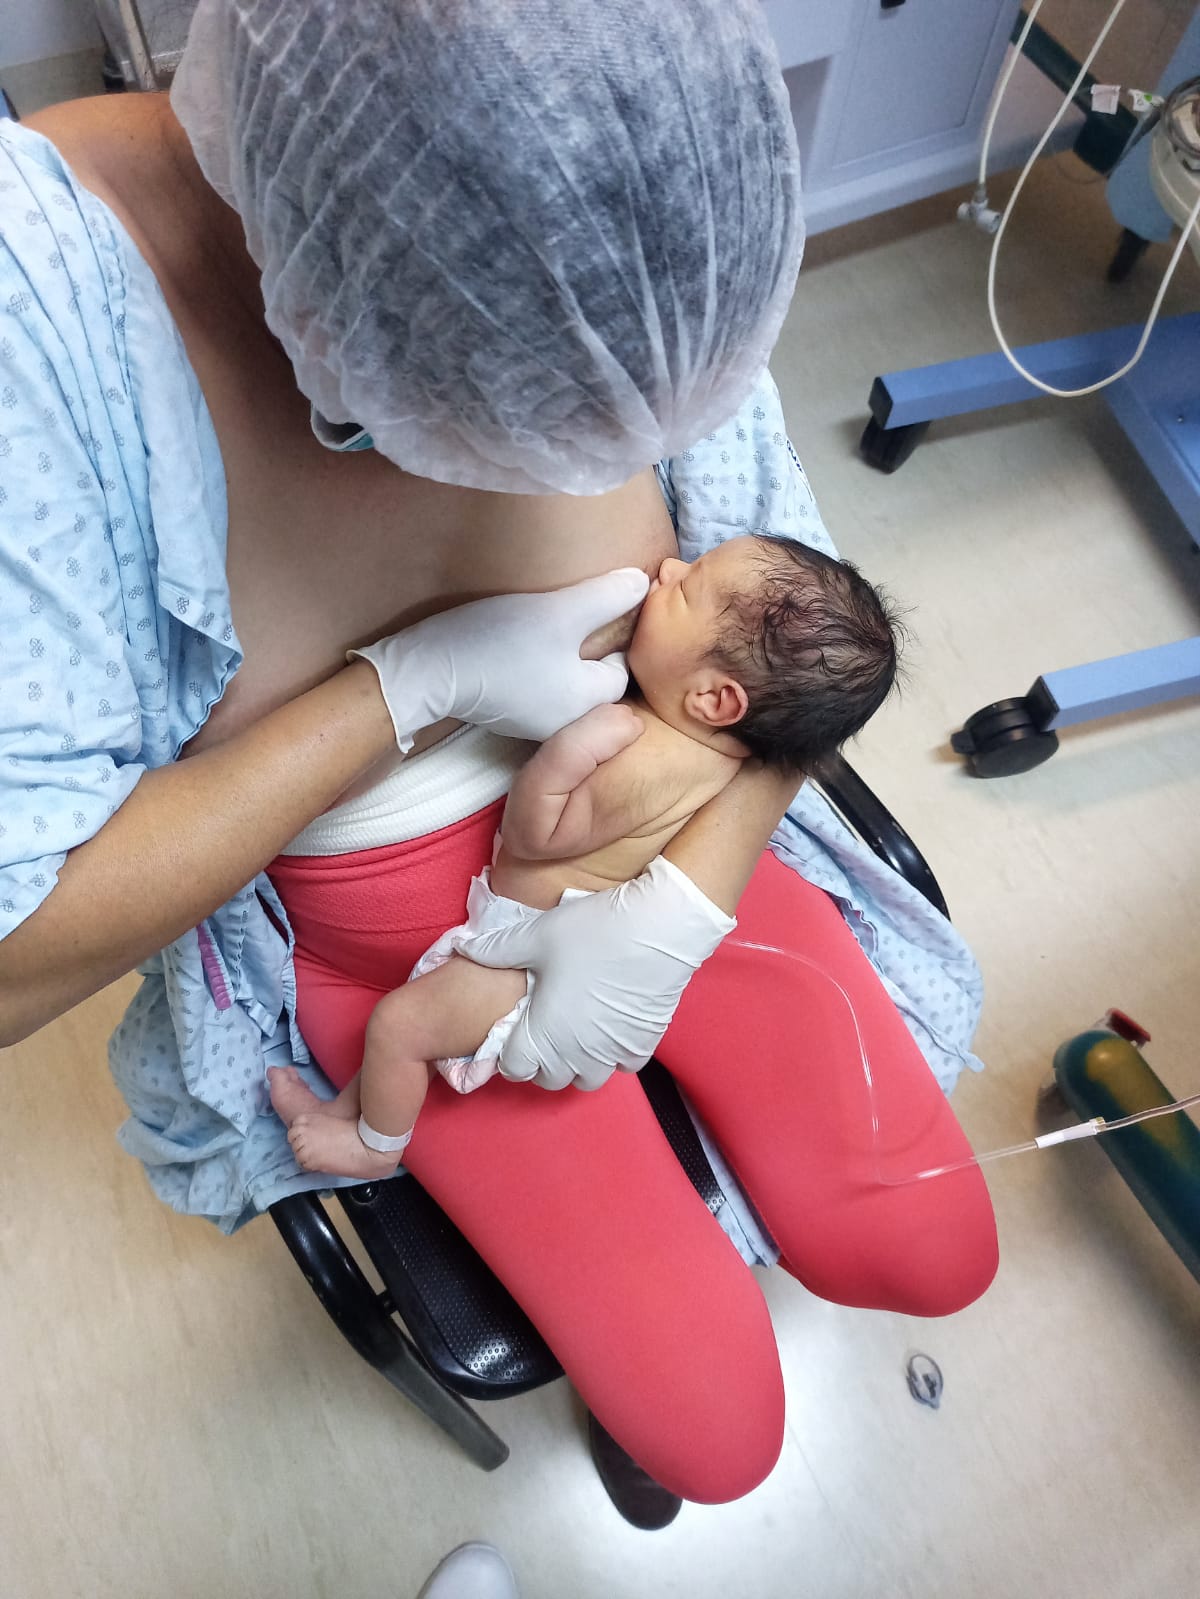 Secretaría de Salud de Guanajuato - Arturo, el bebé recién nacido